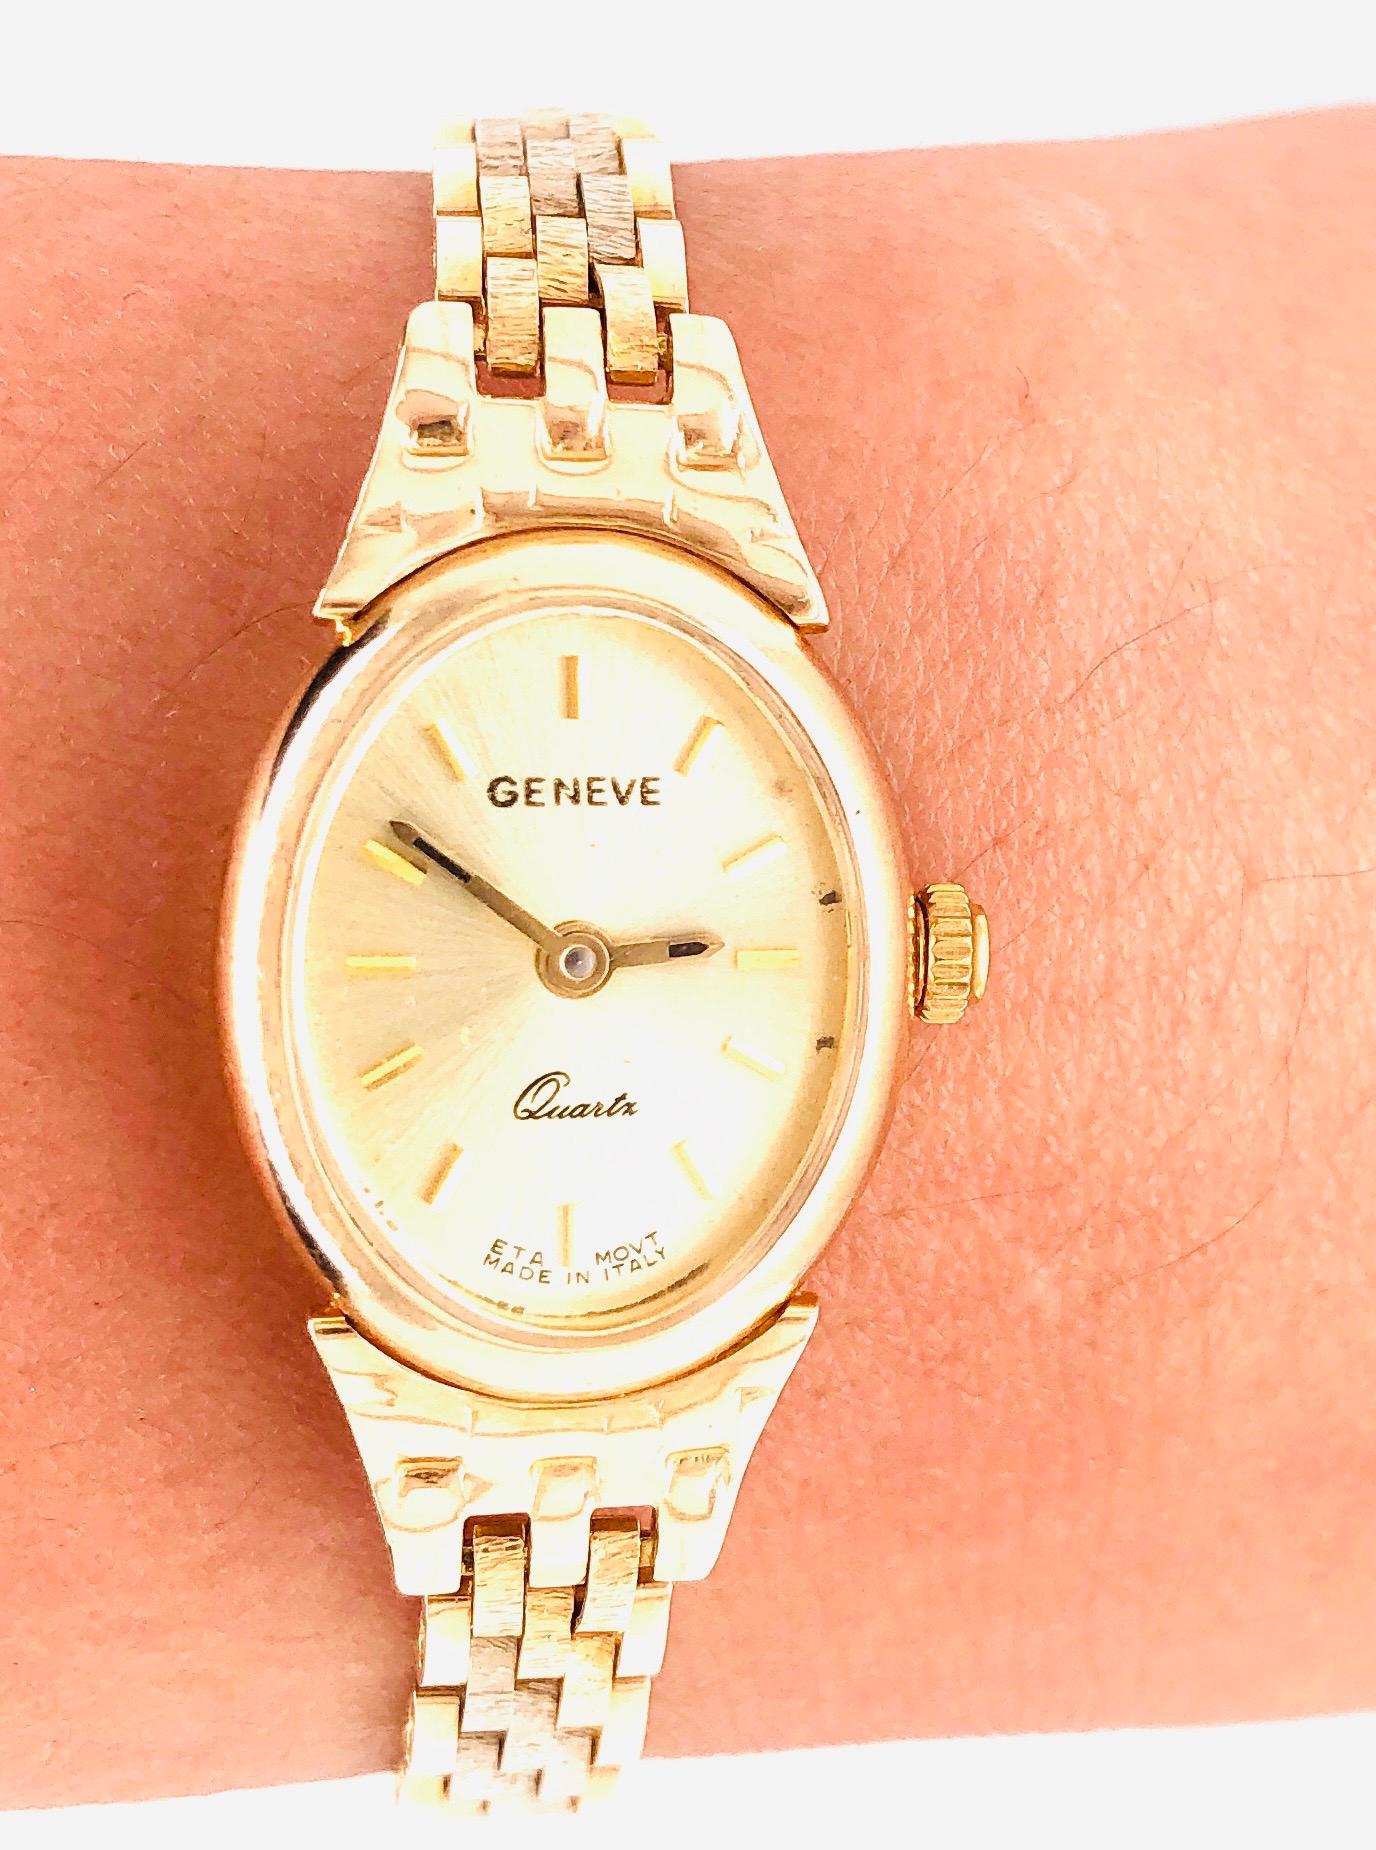 Bracelet et montre en or jaune 14Kt de Geneve Quartz avec un bracelet en or pesant 21 grammes d'or 14Kt. Le poids est sans œuvres.  Pièces suisses fabriquées en Italie
Universal Geneve est parfois confondue avec le Geneva Watch Group, mais il s'agit